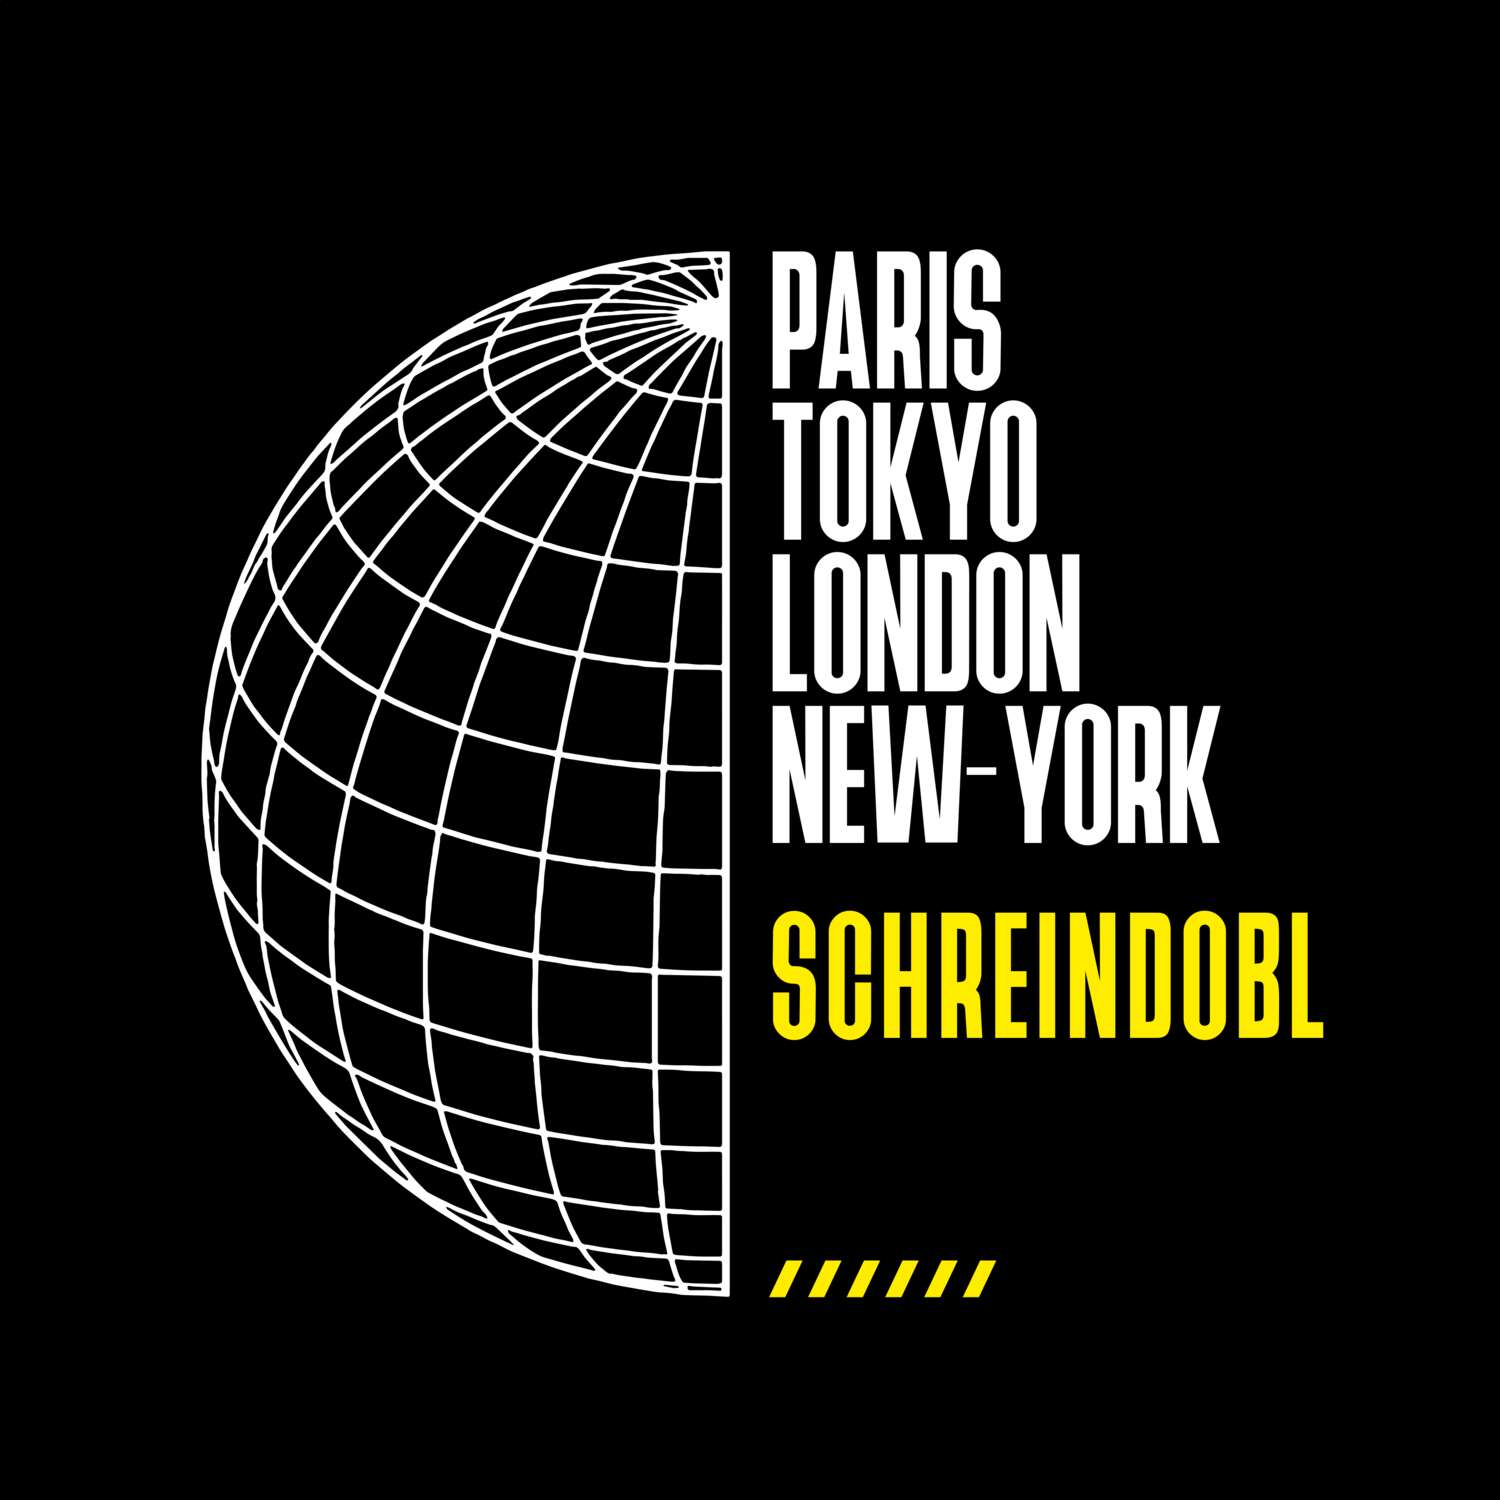 Schreindobl T-Shirt »Paris Tokyo London«